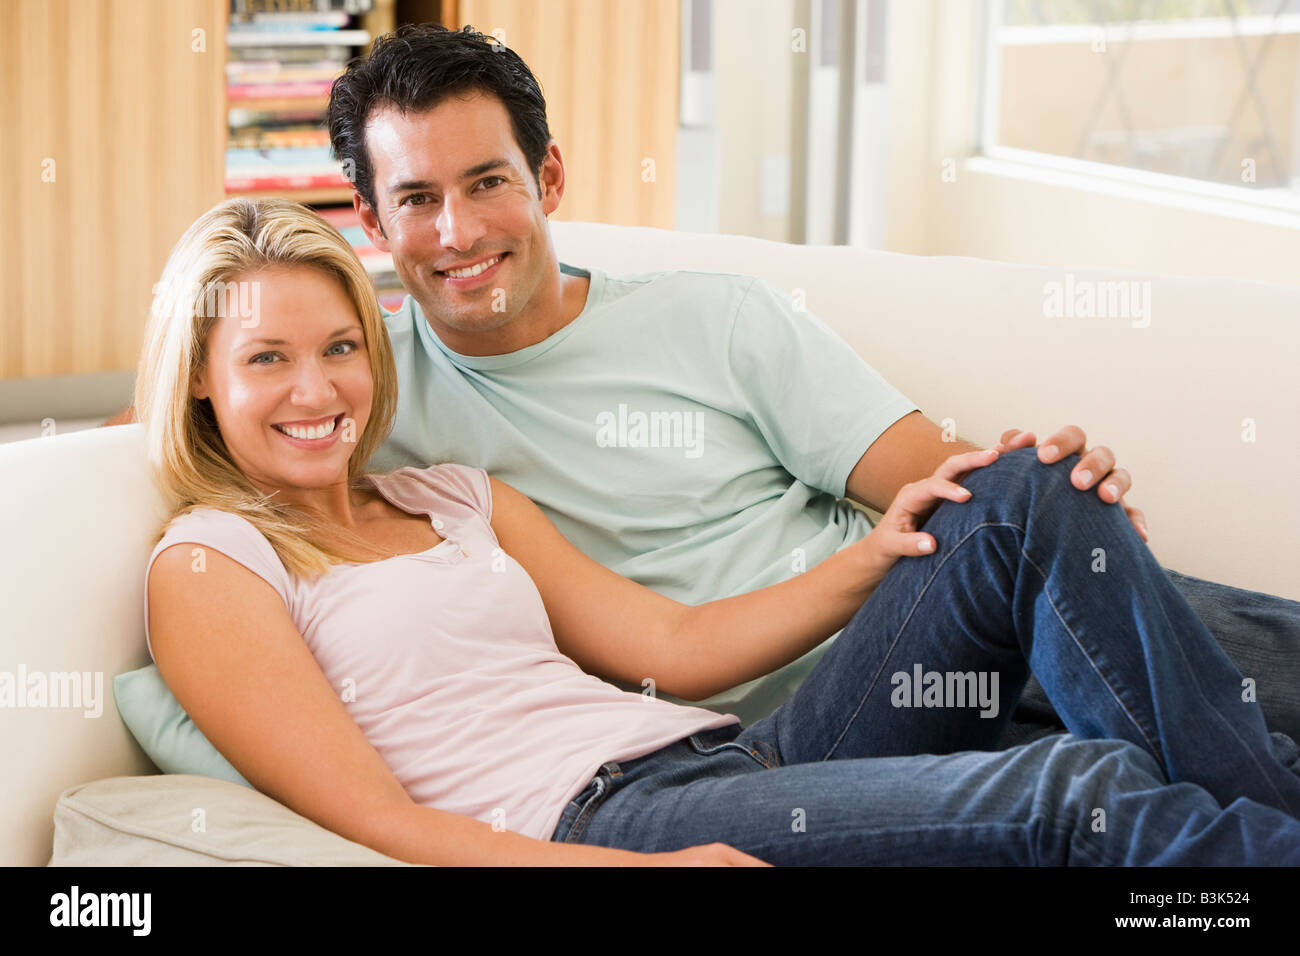 Paar im Wohnzimmer lächelnd Stockfoto